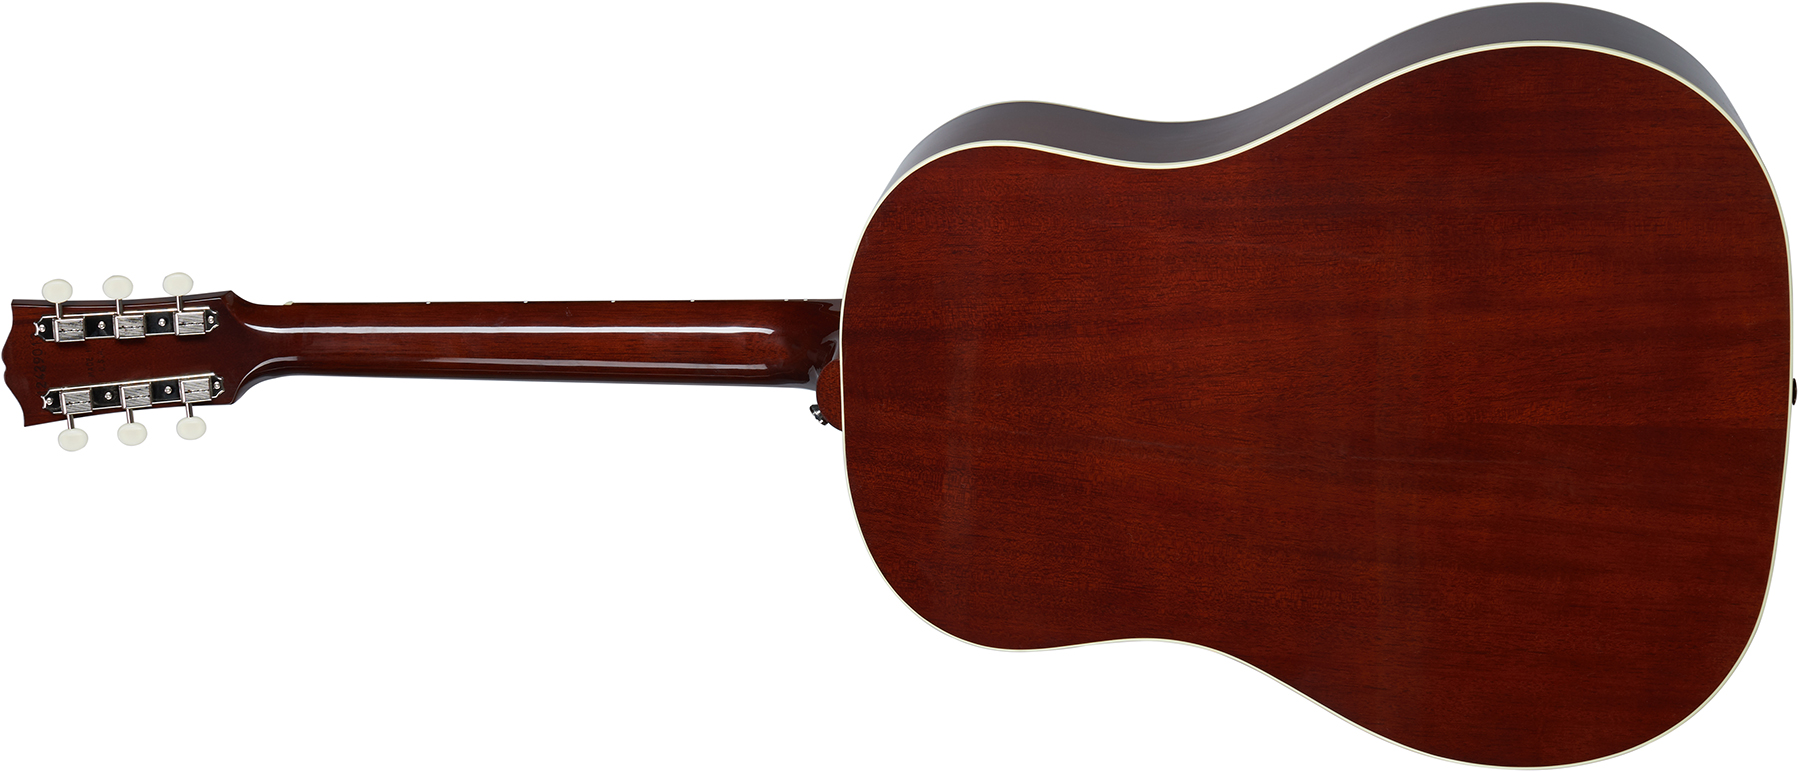 Gibson J-45 50s Original 2020 Dreadnought Epicea Acajou Rw - Vintage Sunburst - Guitare Electro Acoustique - Variation 1